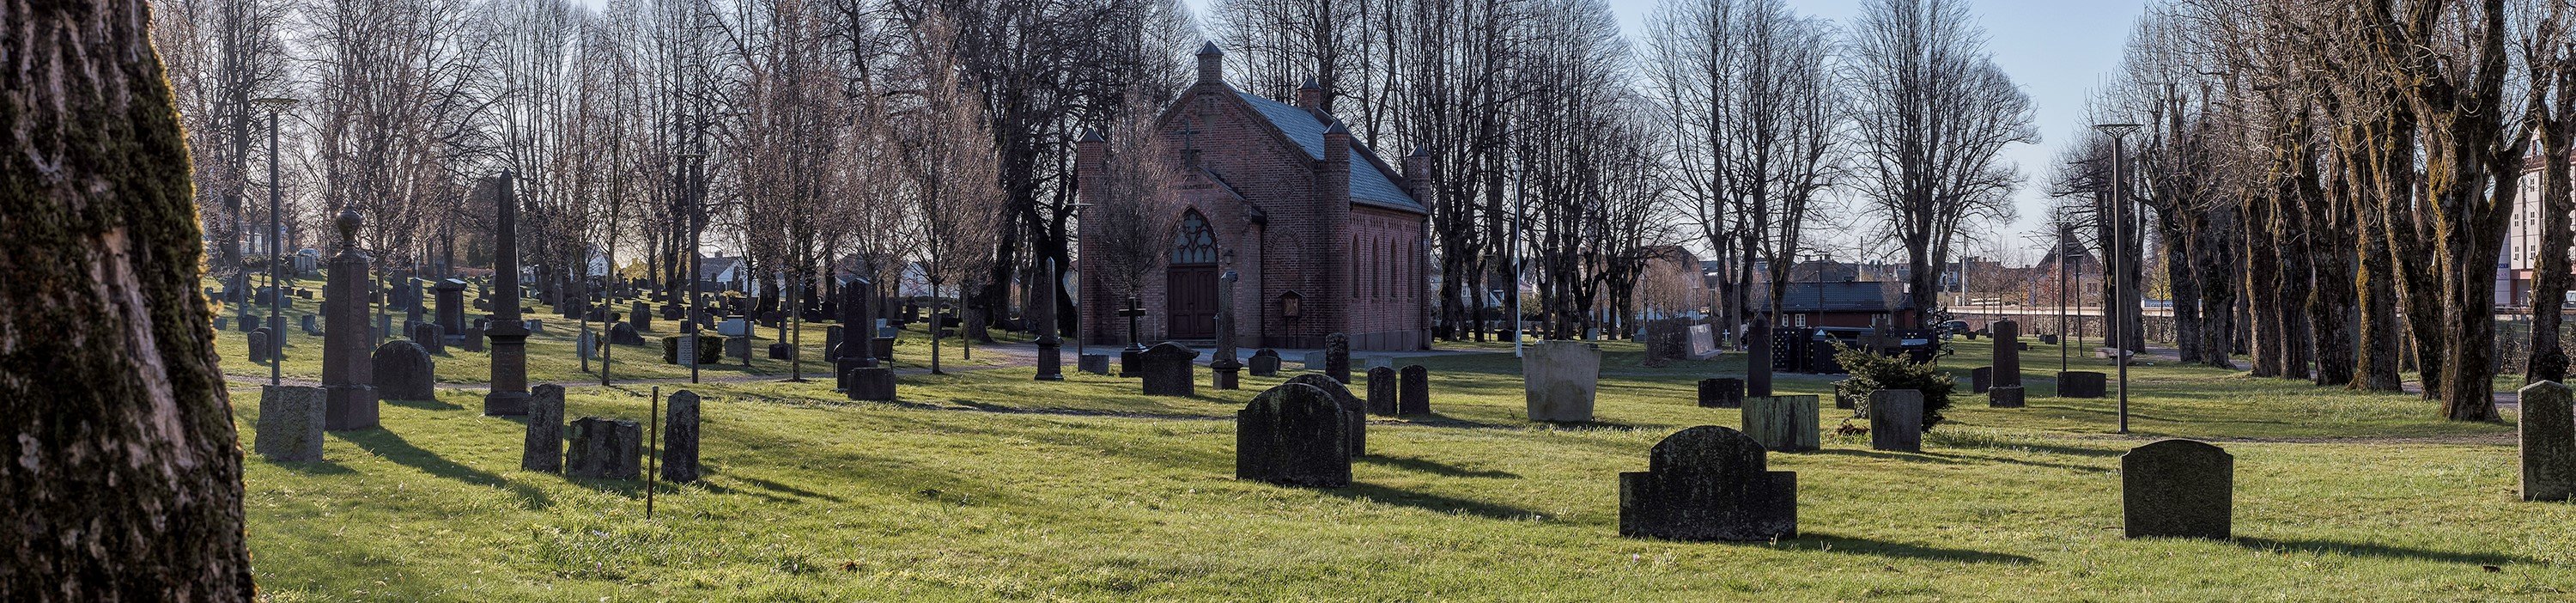 Tønsberg gamle kirkegård med Mariakapellet. Foto: Daniel Korslund / Statsforvalternes fellestjenester